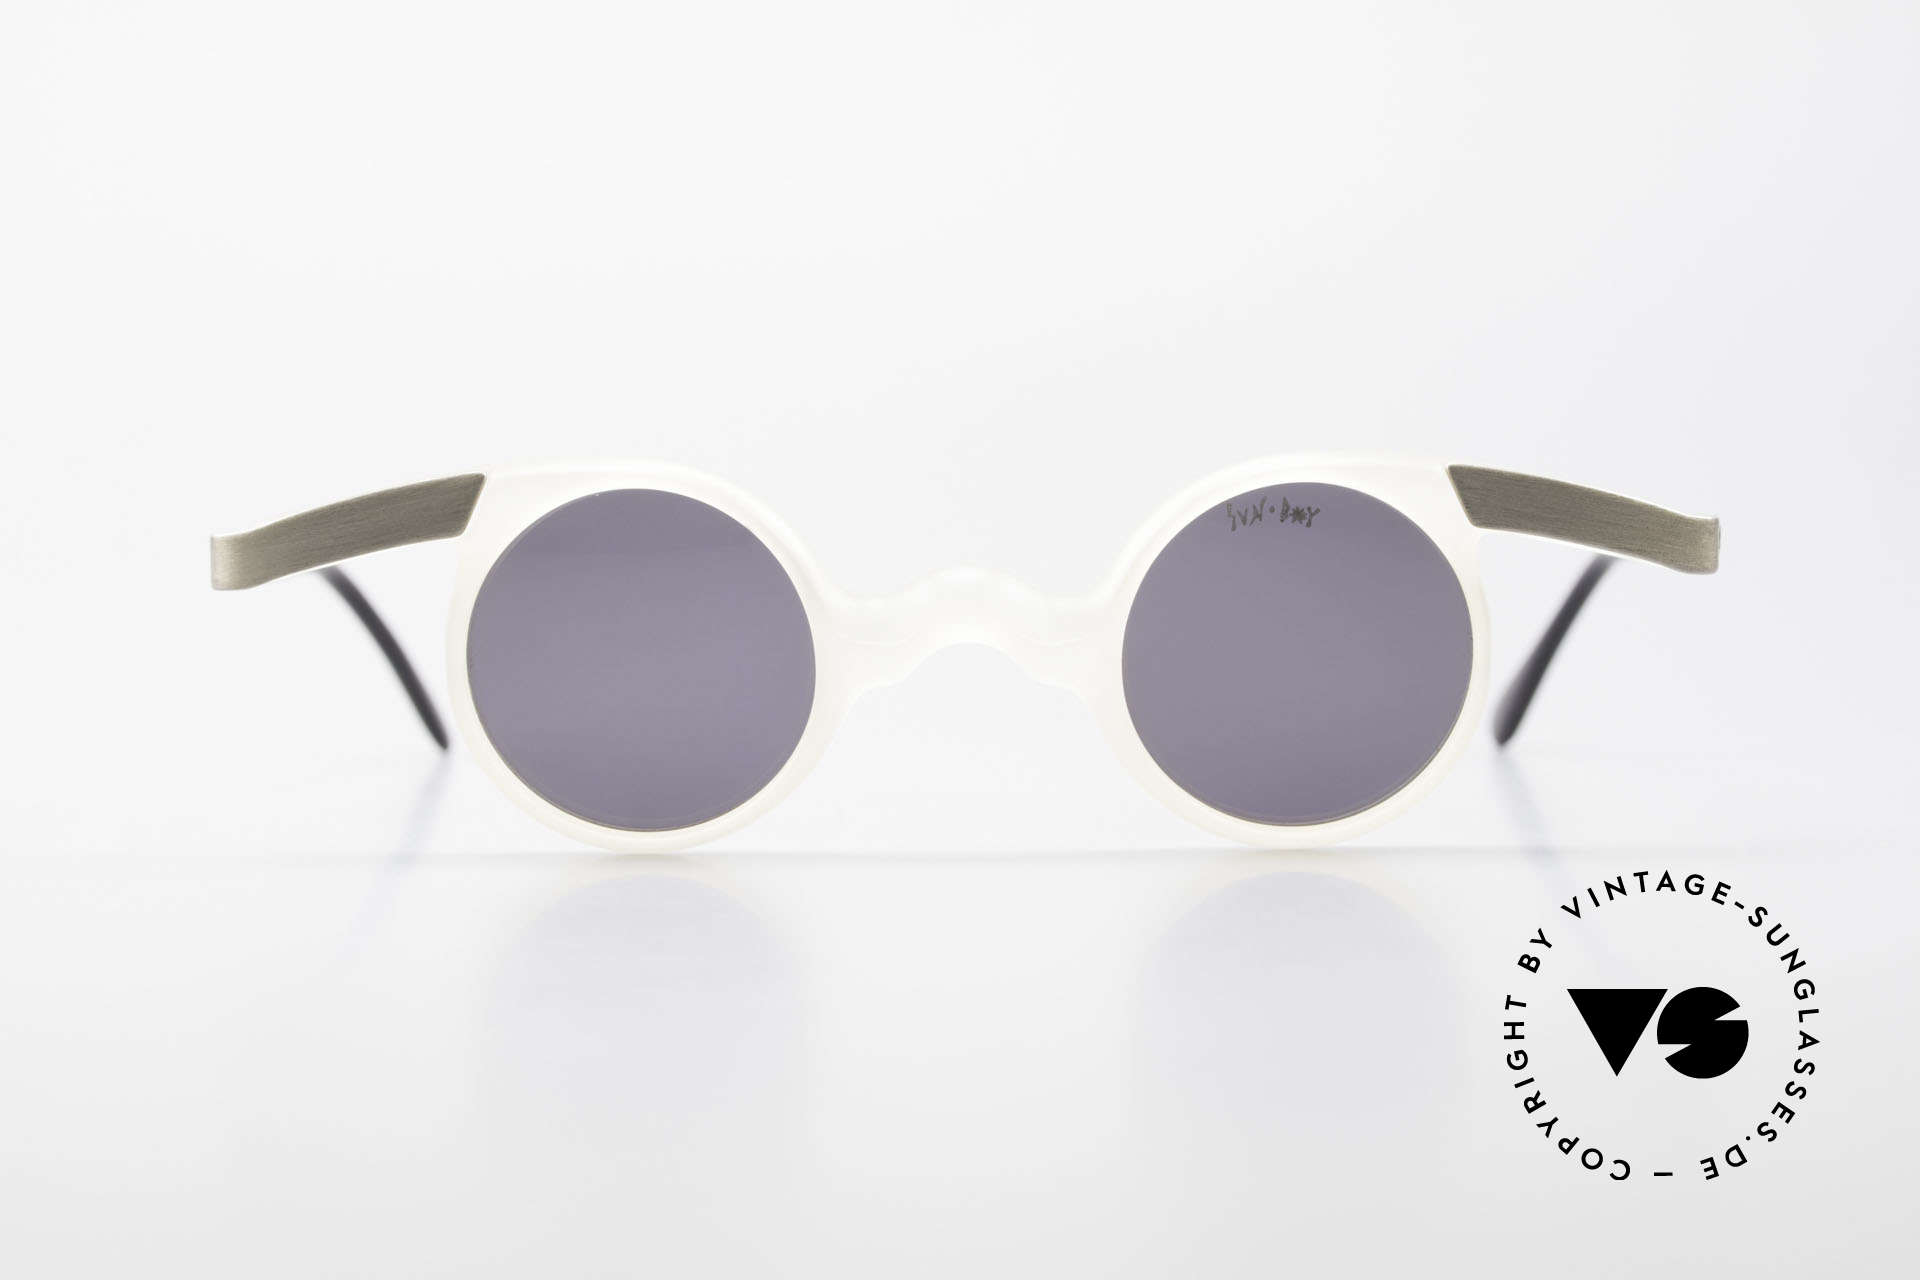 Sunboy SB39 Vintage No Retro Sonnenbrille, ungetragen (wie alle unsere alten VINTAGE Brillen), Passend für Herren und Damen